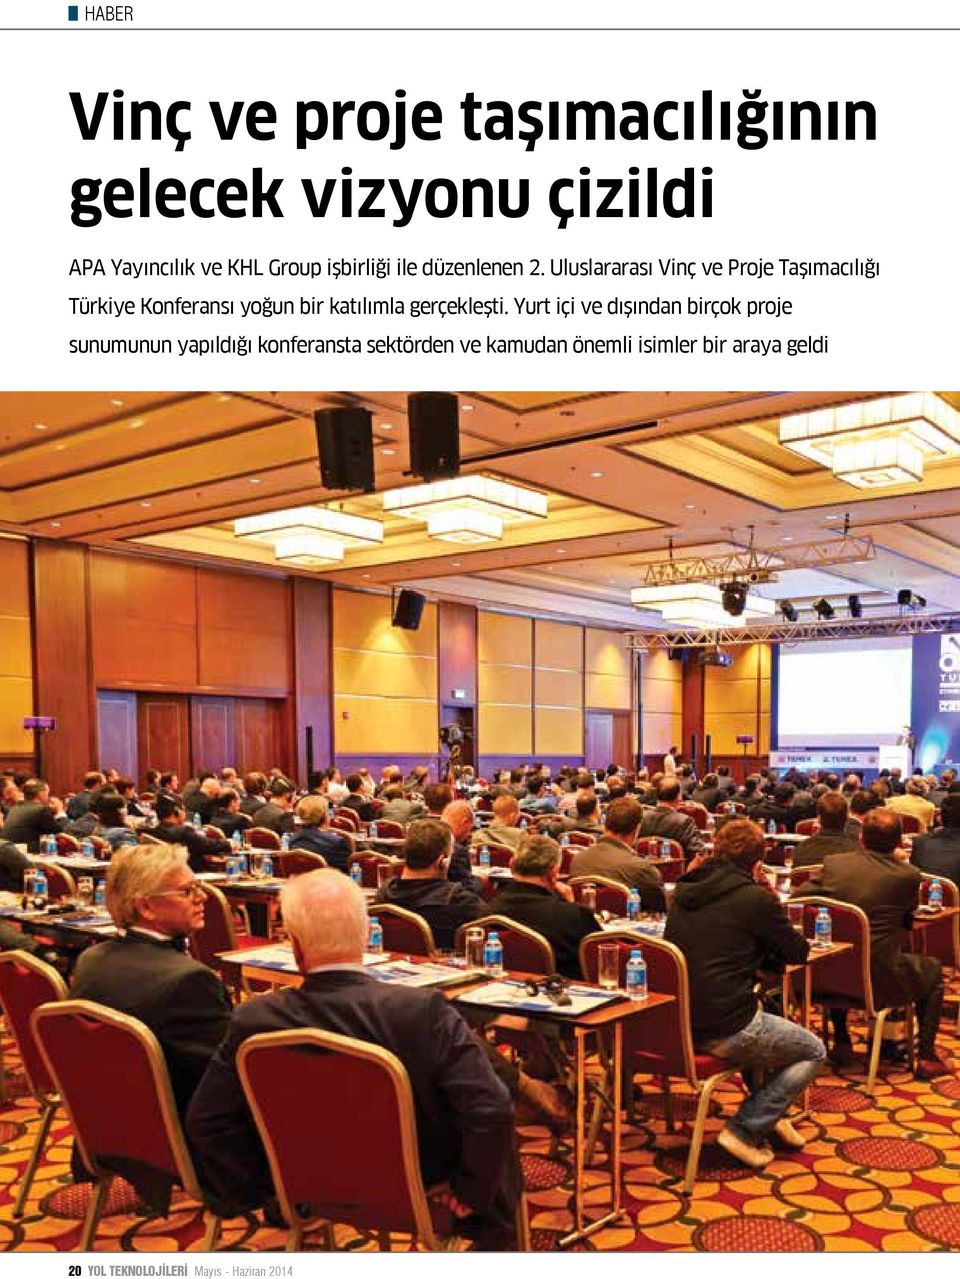 Uluslararası Vinç ve Proje Taşımacılığı Türkiye Konferansı yoğun bir katılımla gerçekleşti.